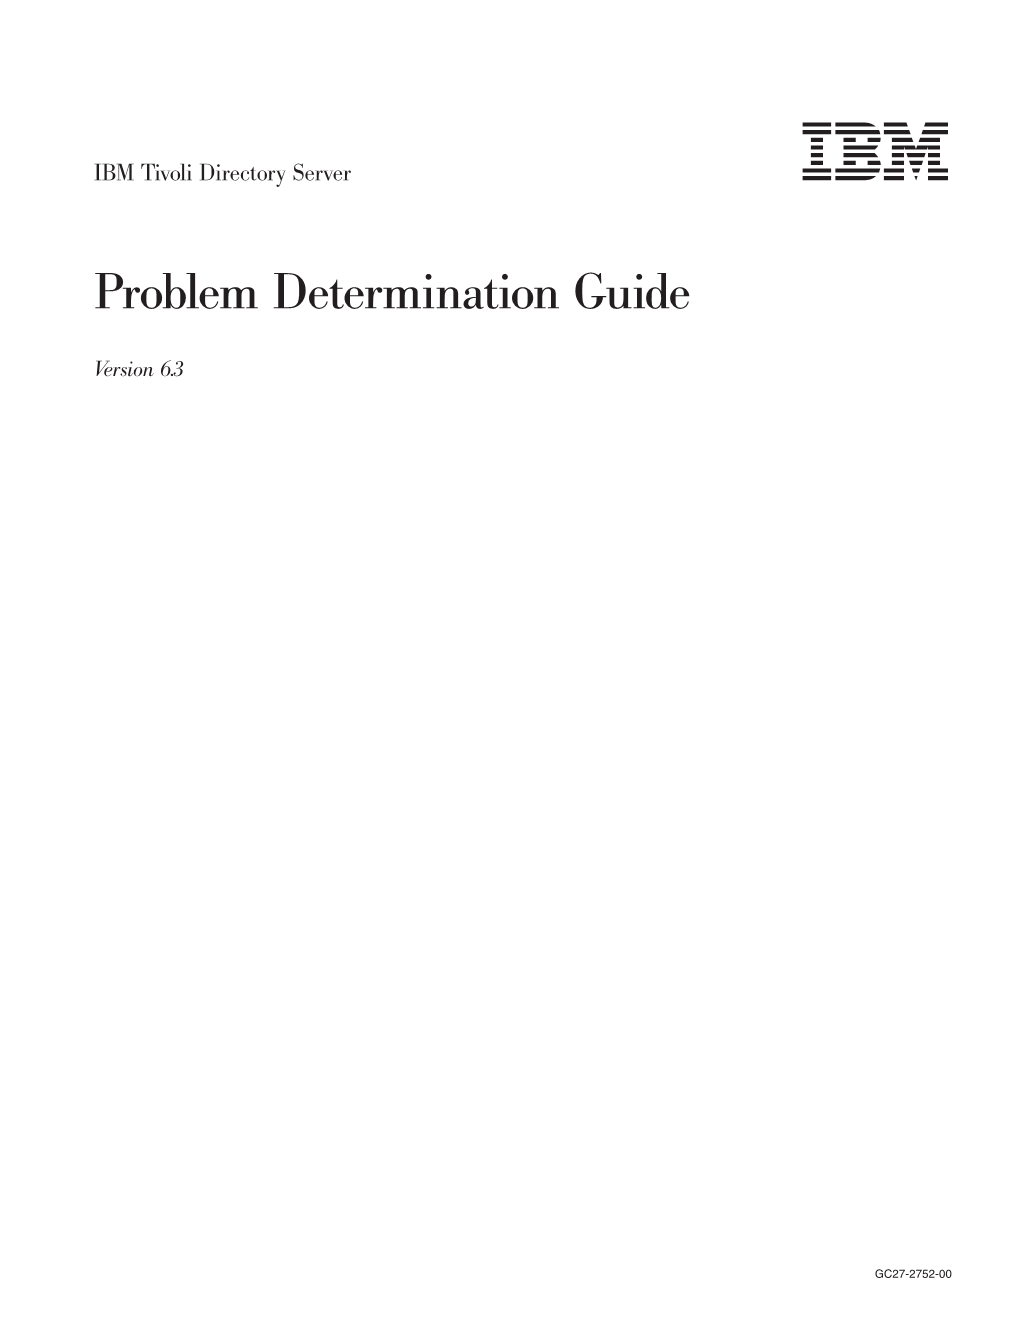 IBM Tivoli Directory Server: Problem Determination Guide